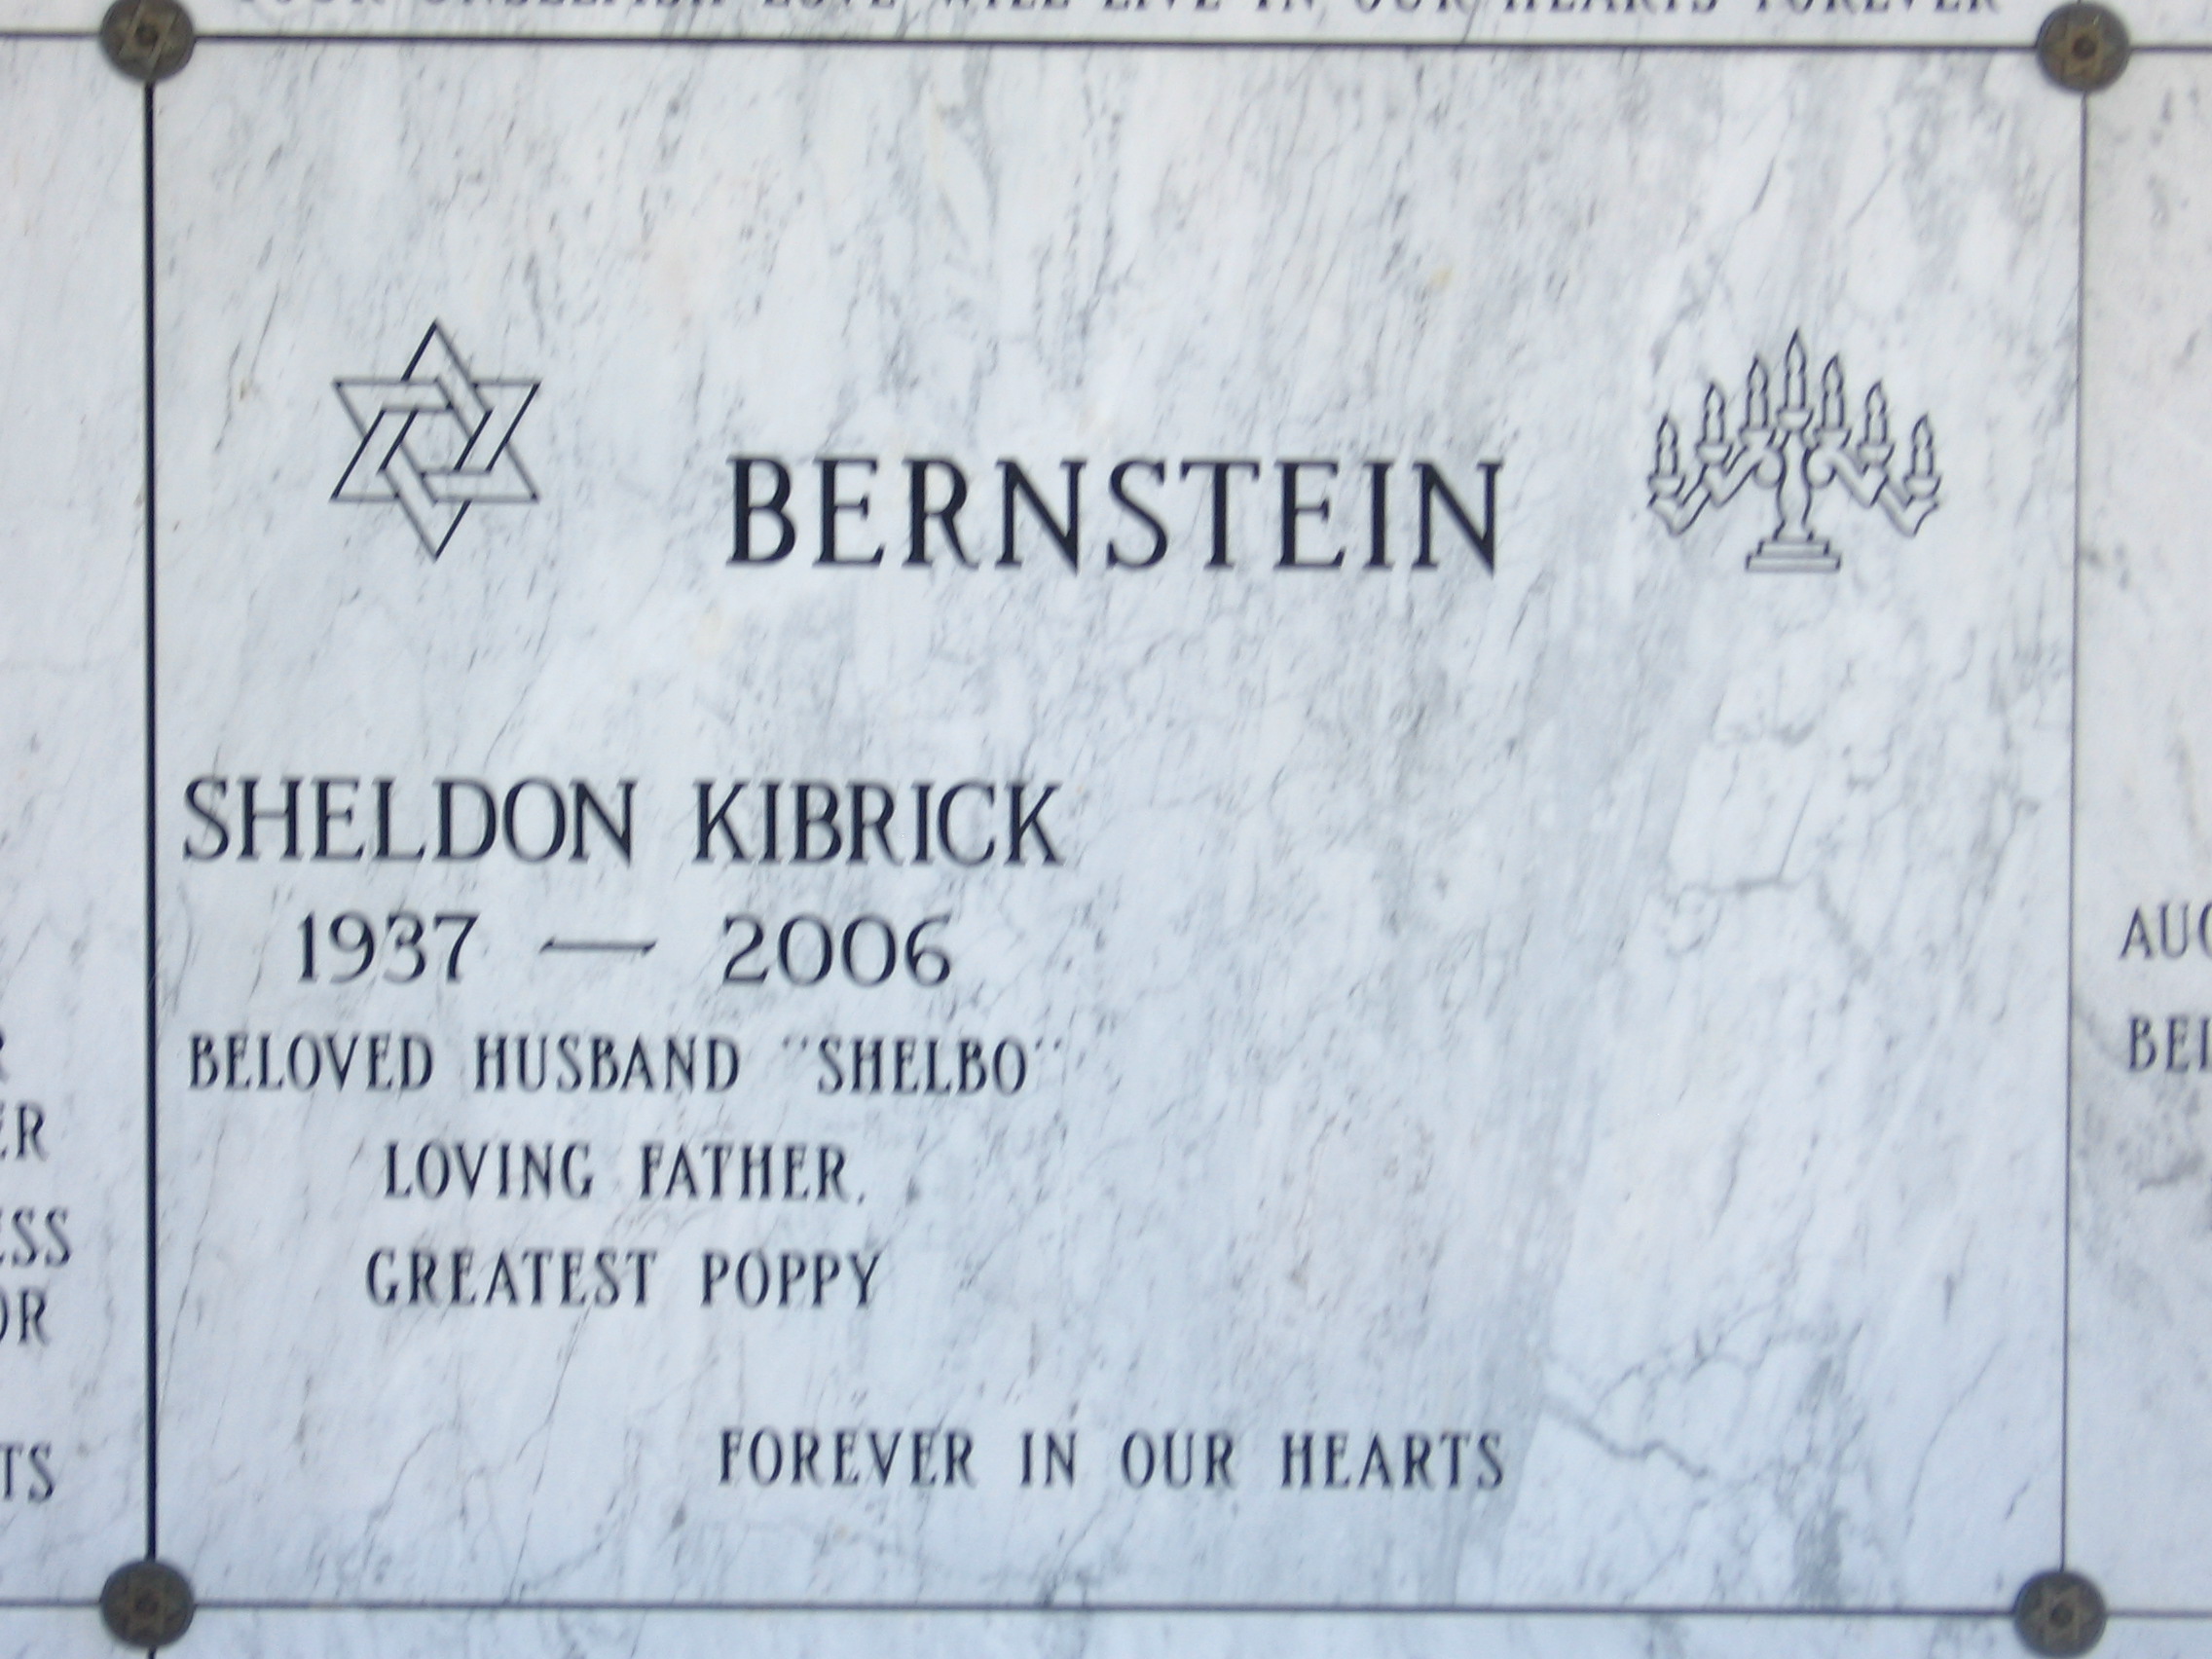 Sheldon Kibrick Bernstein